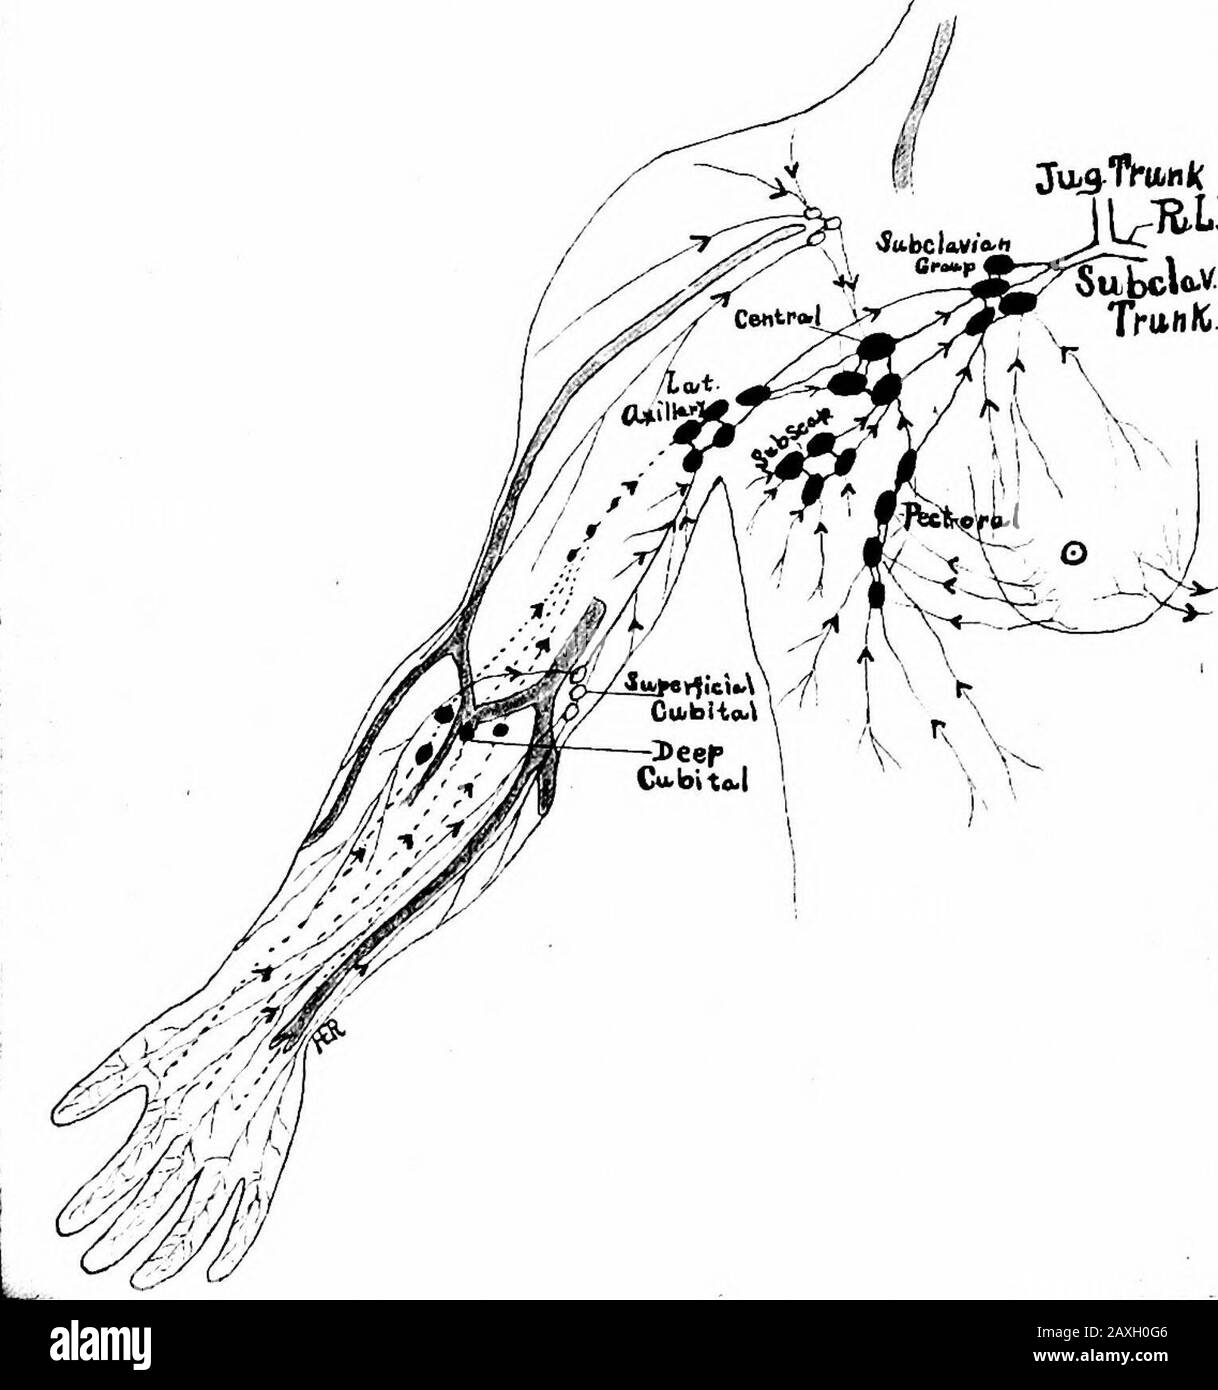 Un manuel d'anatomie . nœuds de lary et le groupe sous-clavière et même à des nœuds profonds du col de l'utérus. (6) les nœuds axillaires ventrales ou pectoraux (deux à quatre) le long de la bordure inférieure du muscle principal pectoralis du thhdto des sixième espaces intercostaux; ils reçoivent la lymphe de la partie théo-complète des wahs thoraciques ventrales et latéraux au-dessus du theumbilicus et des deux tiers latéraux de la glande mammaire. Les Théirefferents passent aux nœuds centraux, latéraux et sous-claviens. (C) les nœuds axillaires dorsaux ou sous-scapulaires se trouvent sur la paroi dorsale de l'axilla près de l'artère sous-scapulaire. Le Banque D'Images